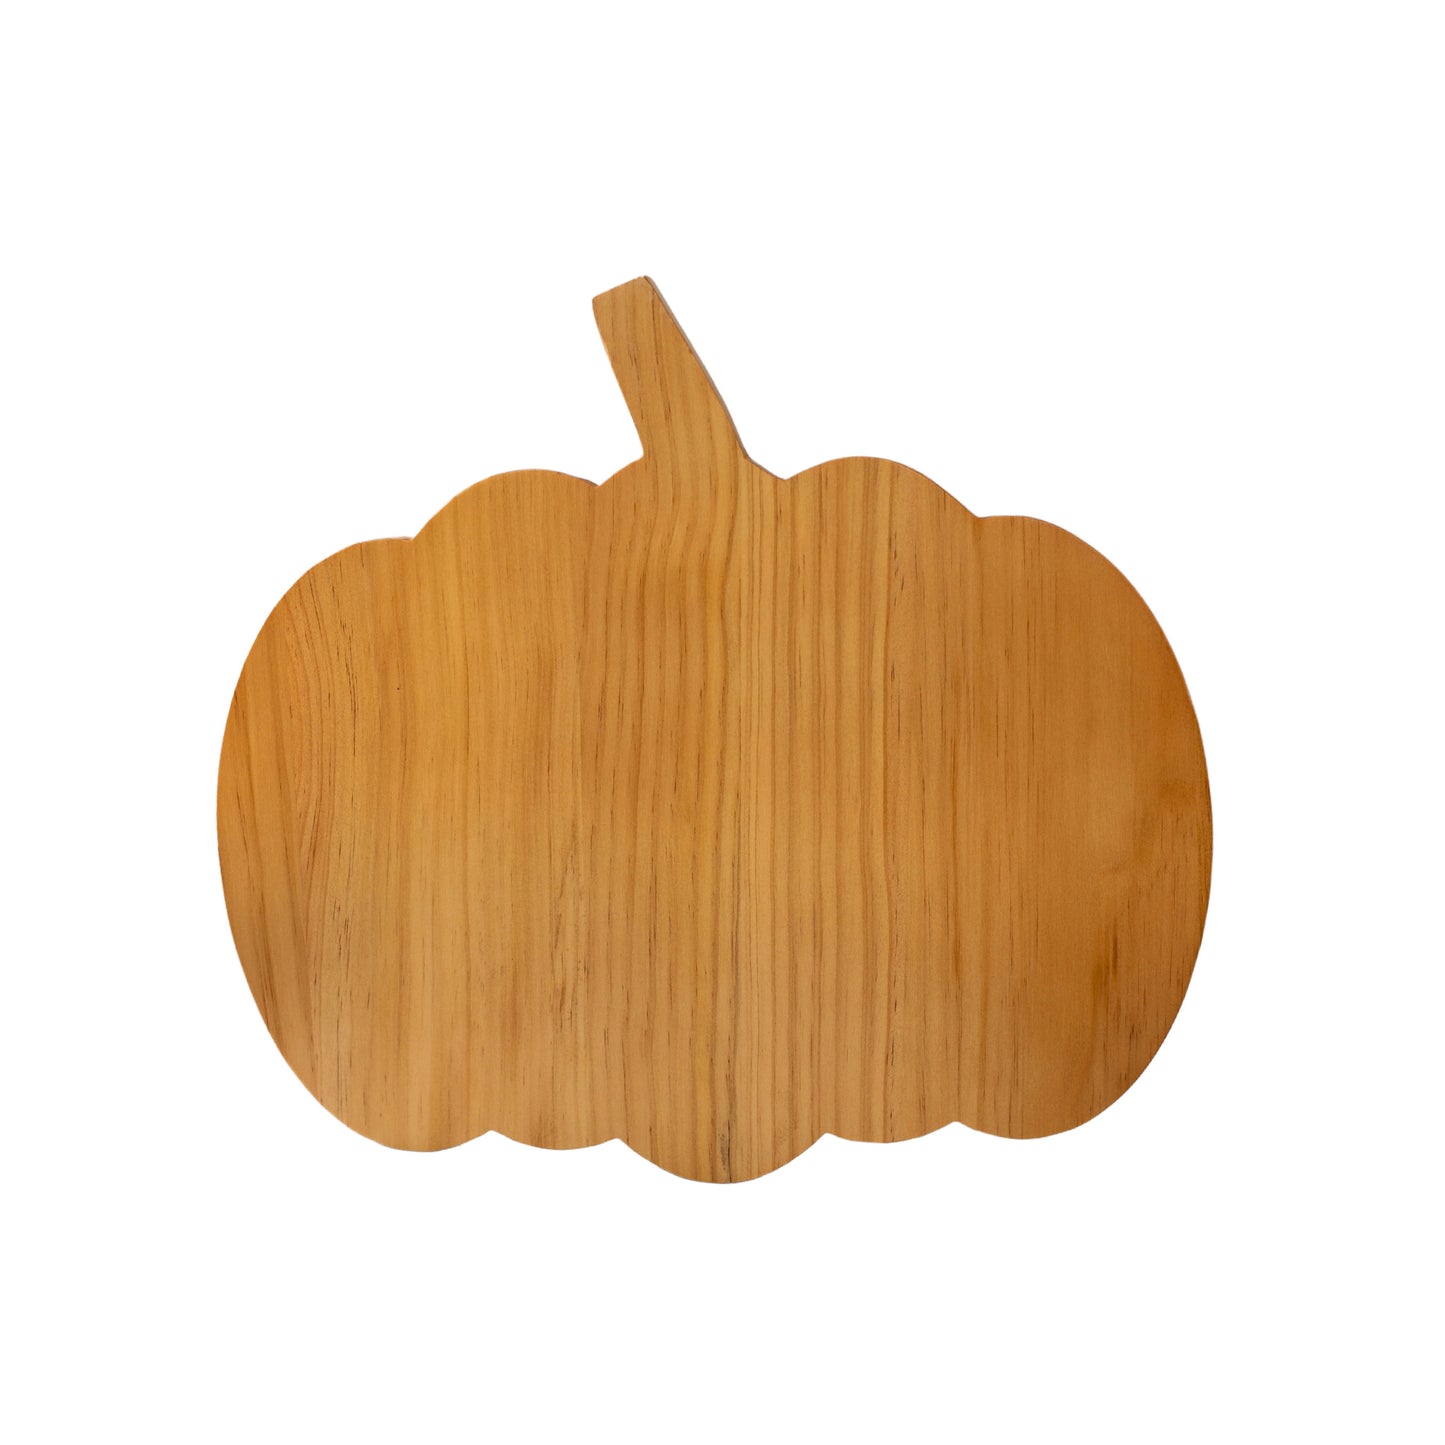 Pumpkin Wood Board - 13.5" x 15"